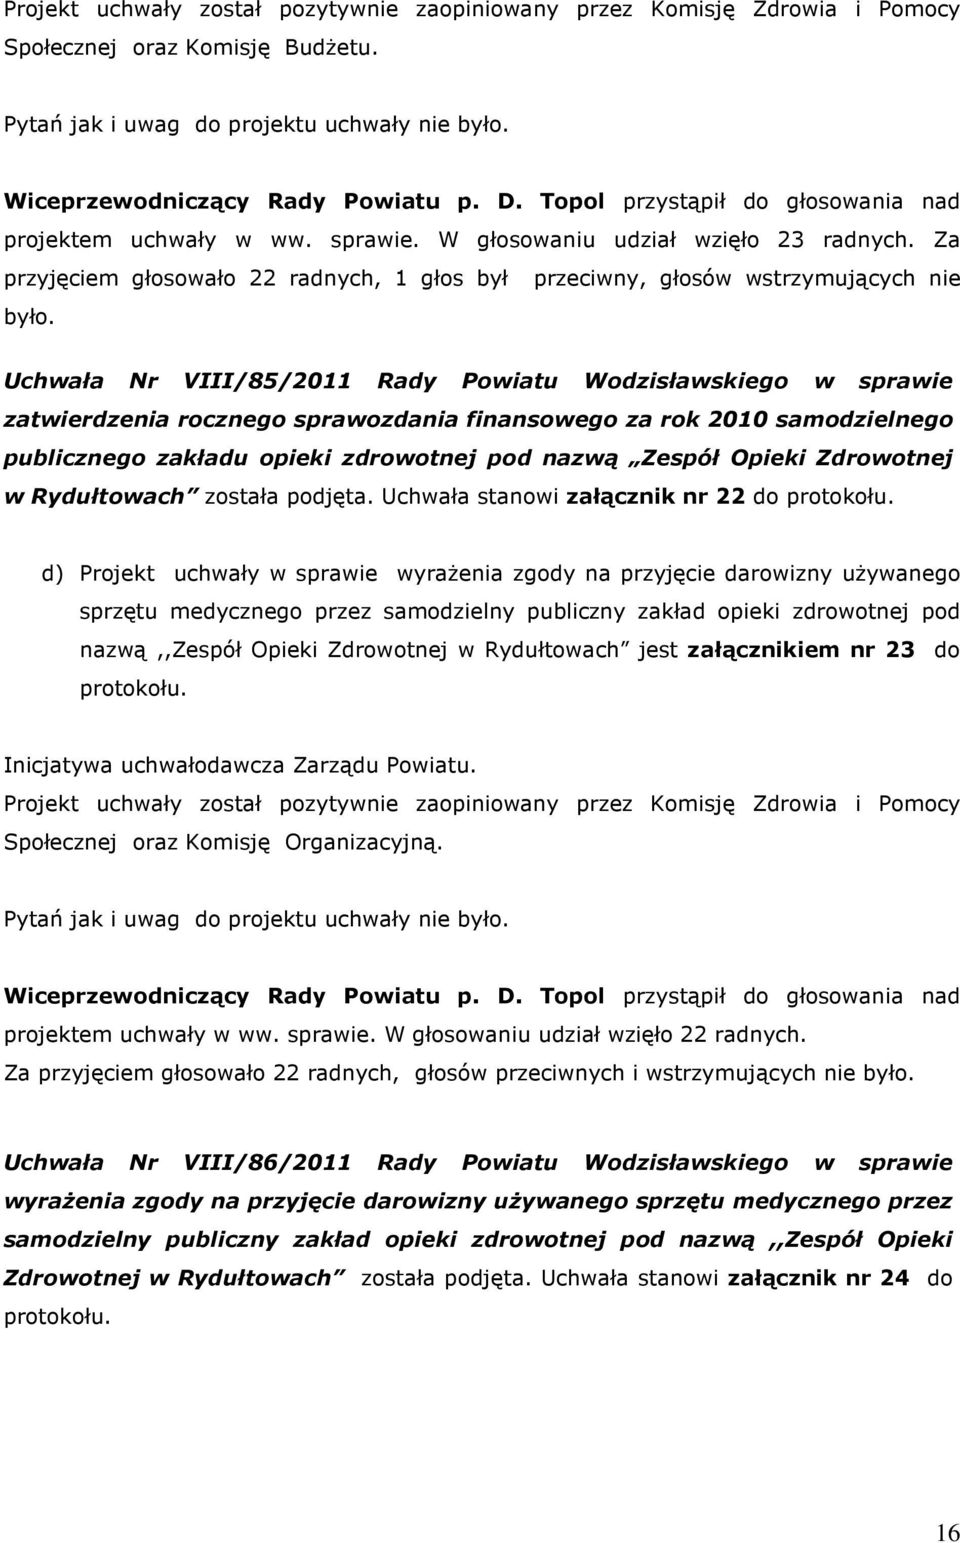 Uchwała Nr VIII/85/2011 Rady Powiatu Wodzisławskiego w sprawie zatwierdzenia rocznego sprawozdania finansowego za rok 2010 samodzielnego publicznego zakładu opieki zdrowotnej pod nazwą Zespół Opieki